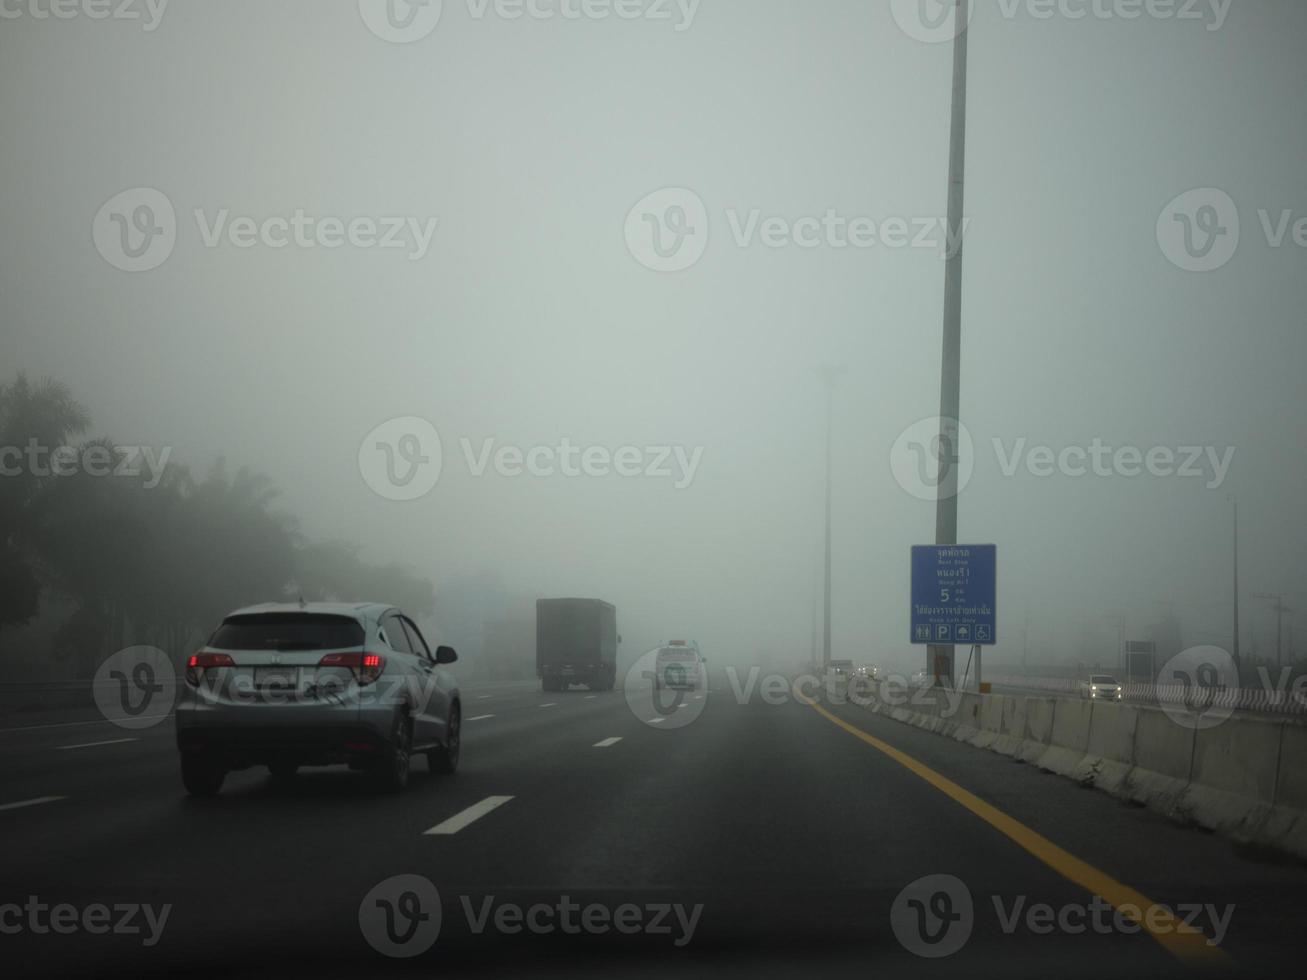 camino en la niebla, mención de señal mantener distancia para autopista-t7.svg foto